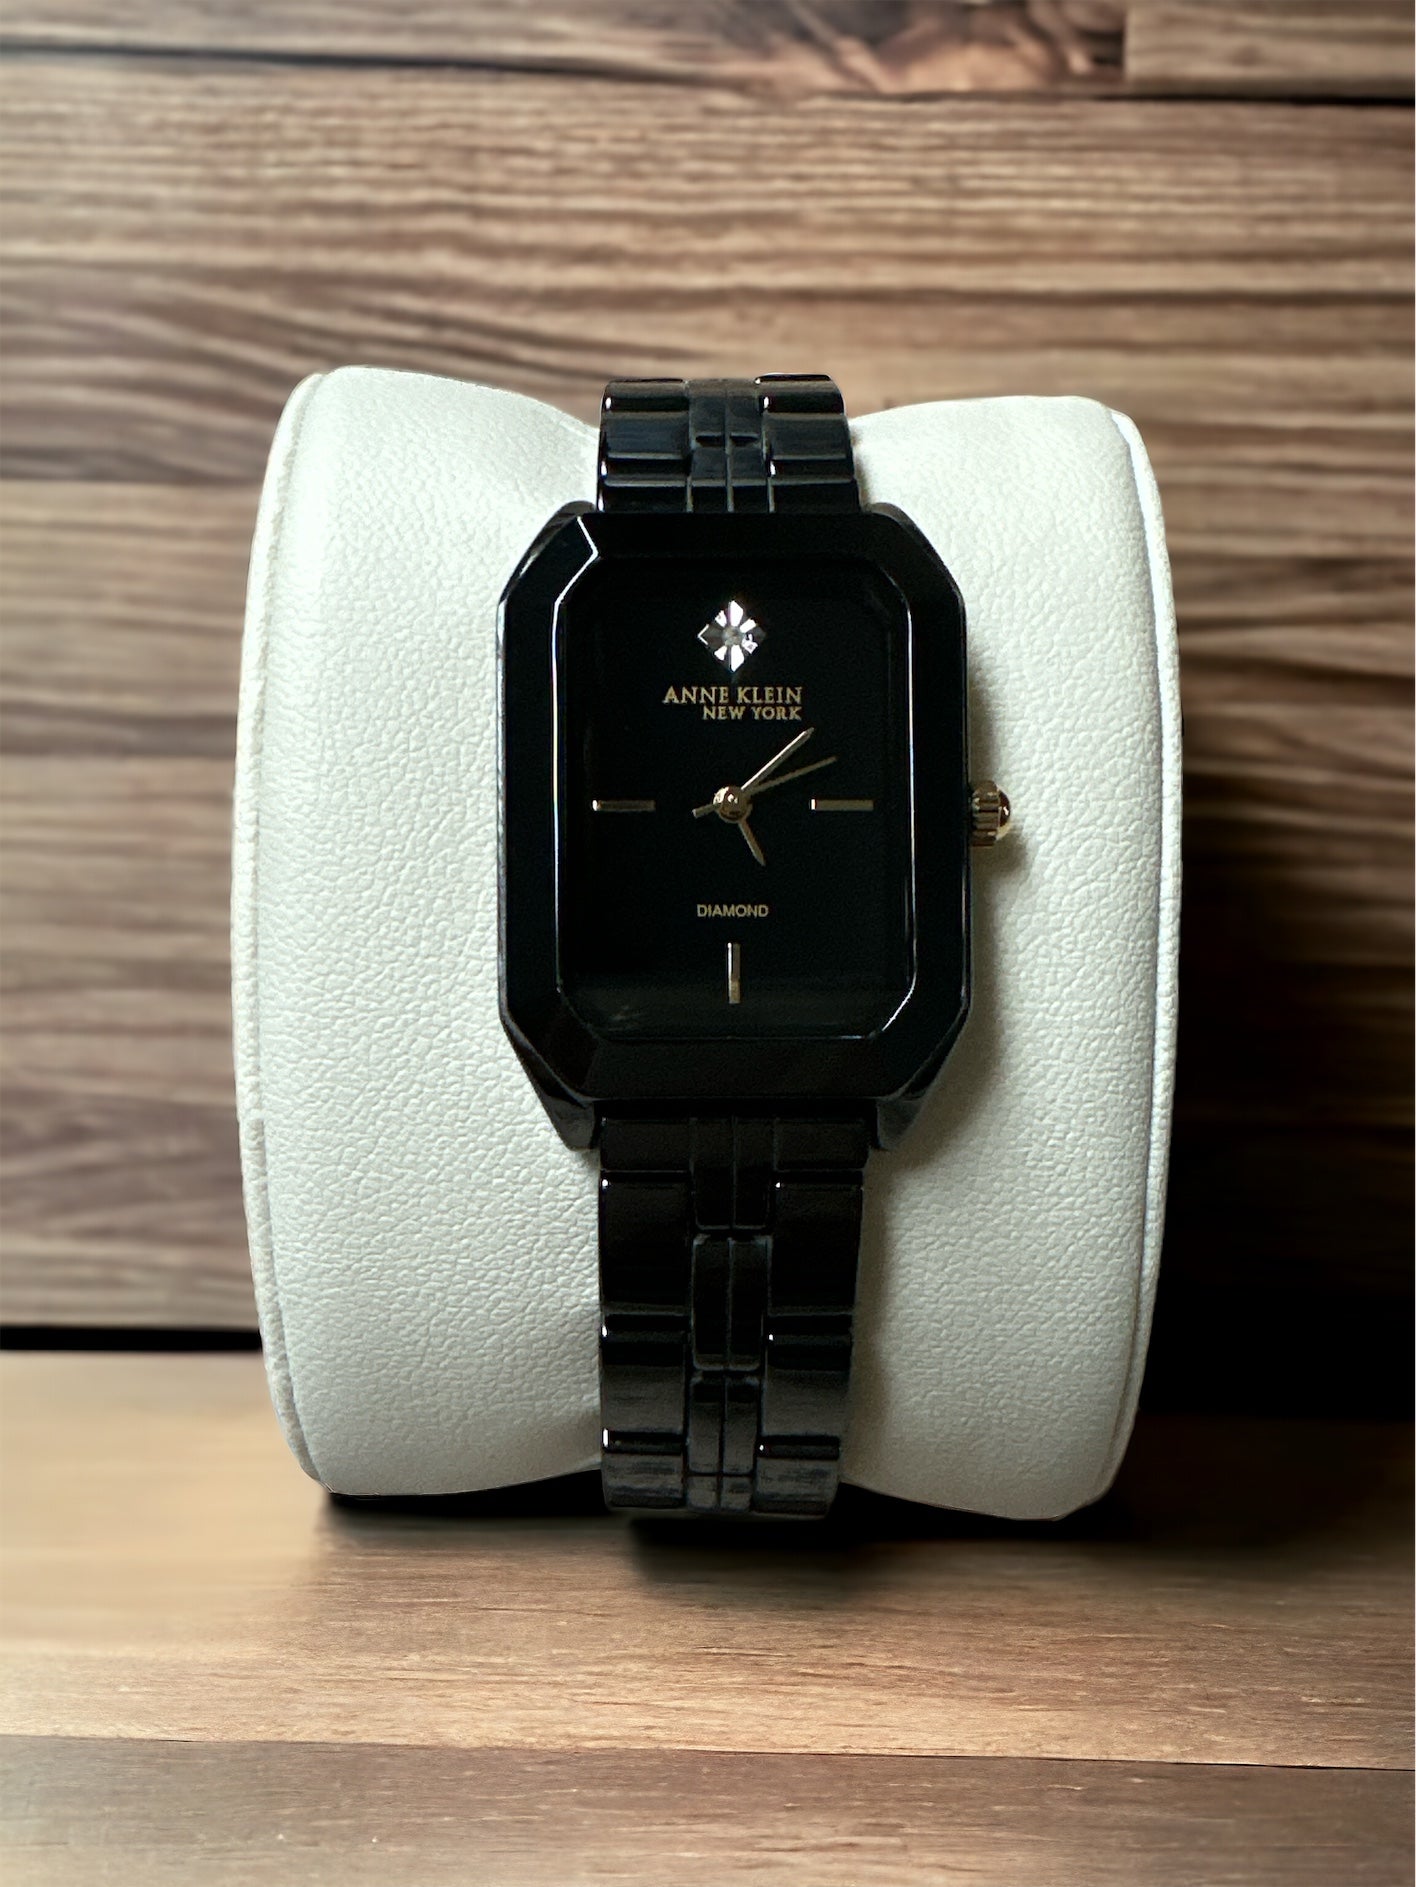 Anne Klein New York Diamond Dial Ceramic Bracelet Watch 12/7738